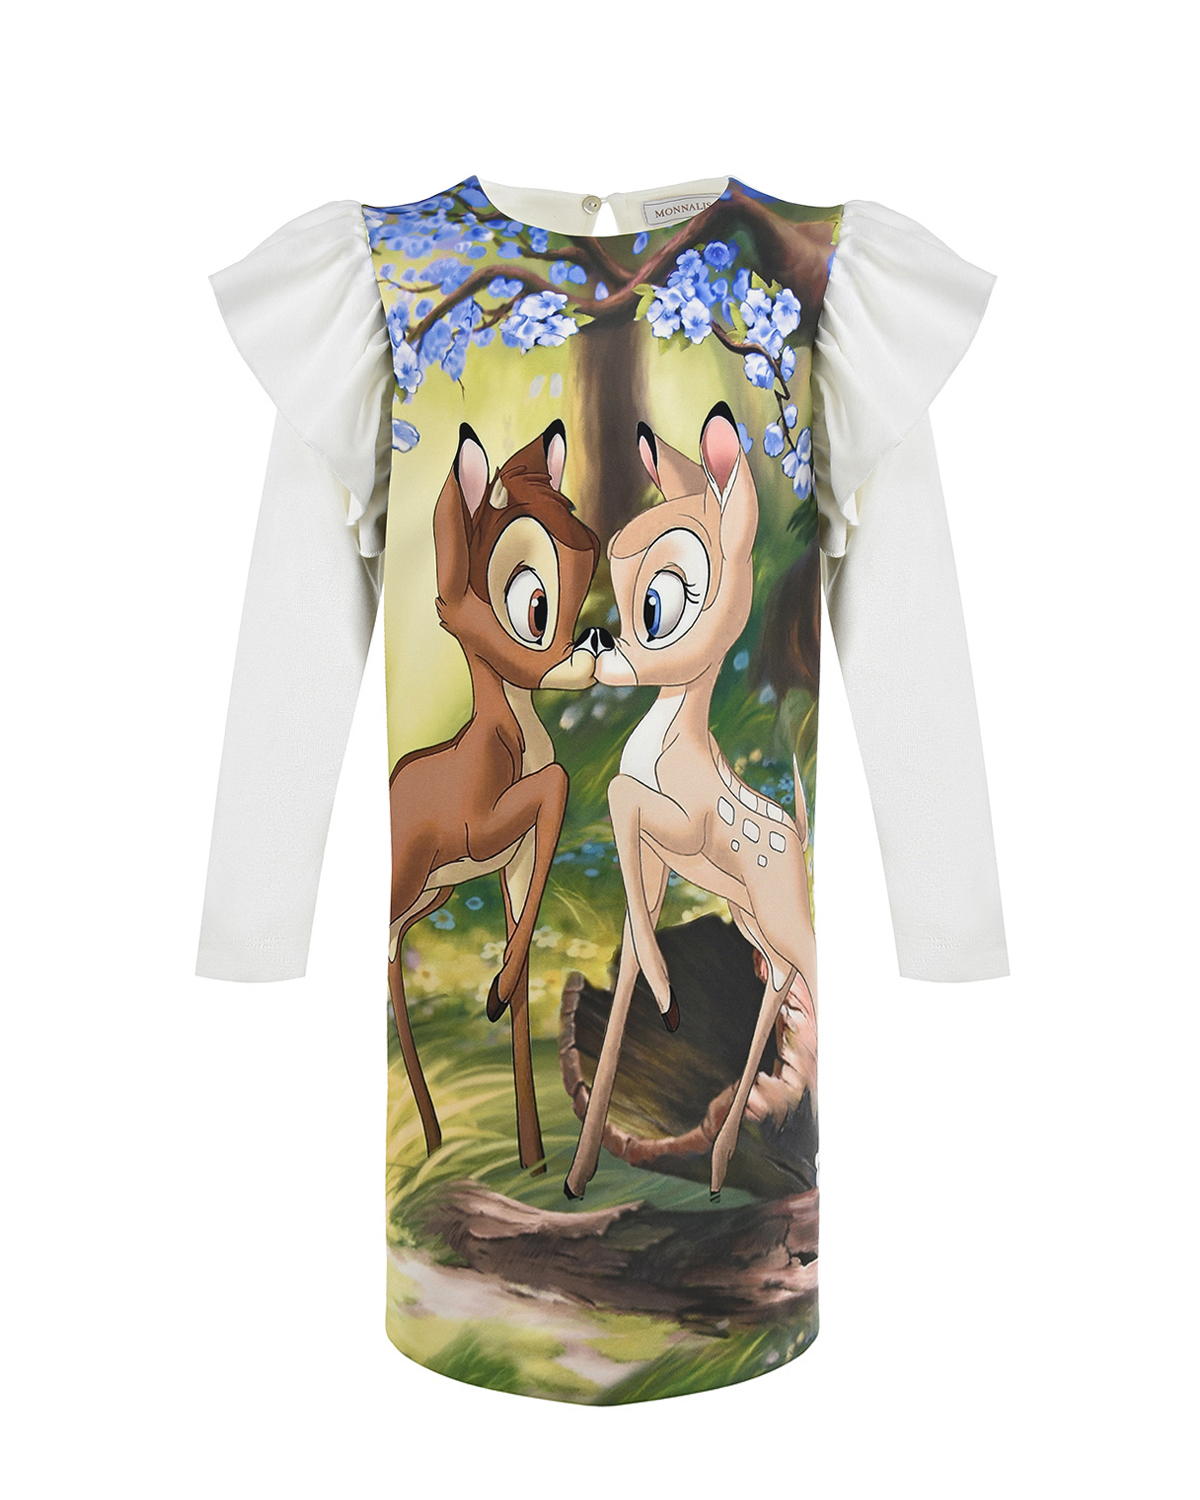 Платье с принтом "Bambi" Monnalisa детское, размер 110, цвет мультиколор - фото 1